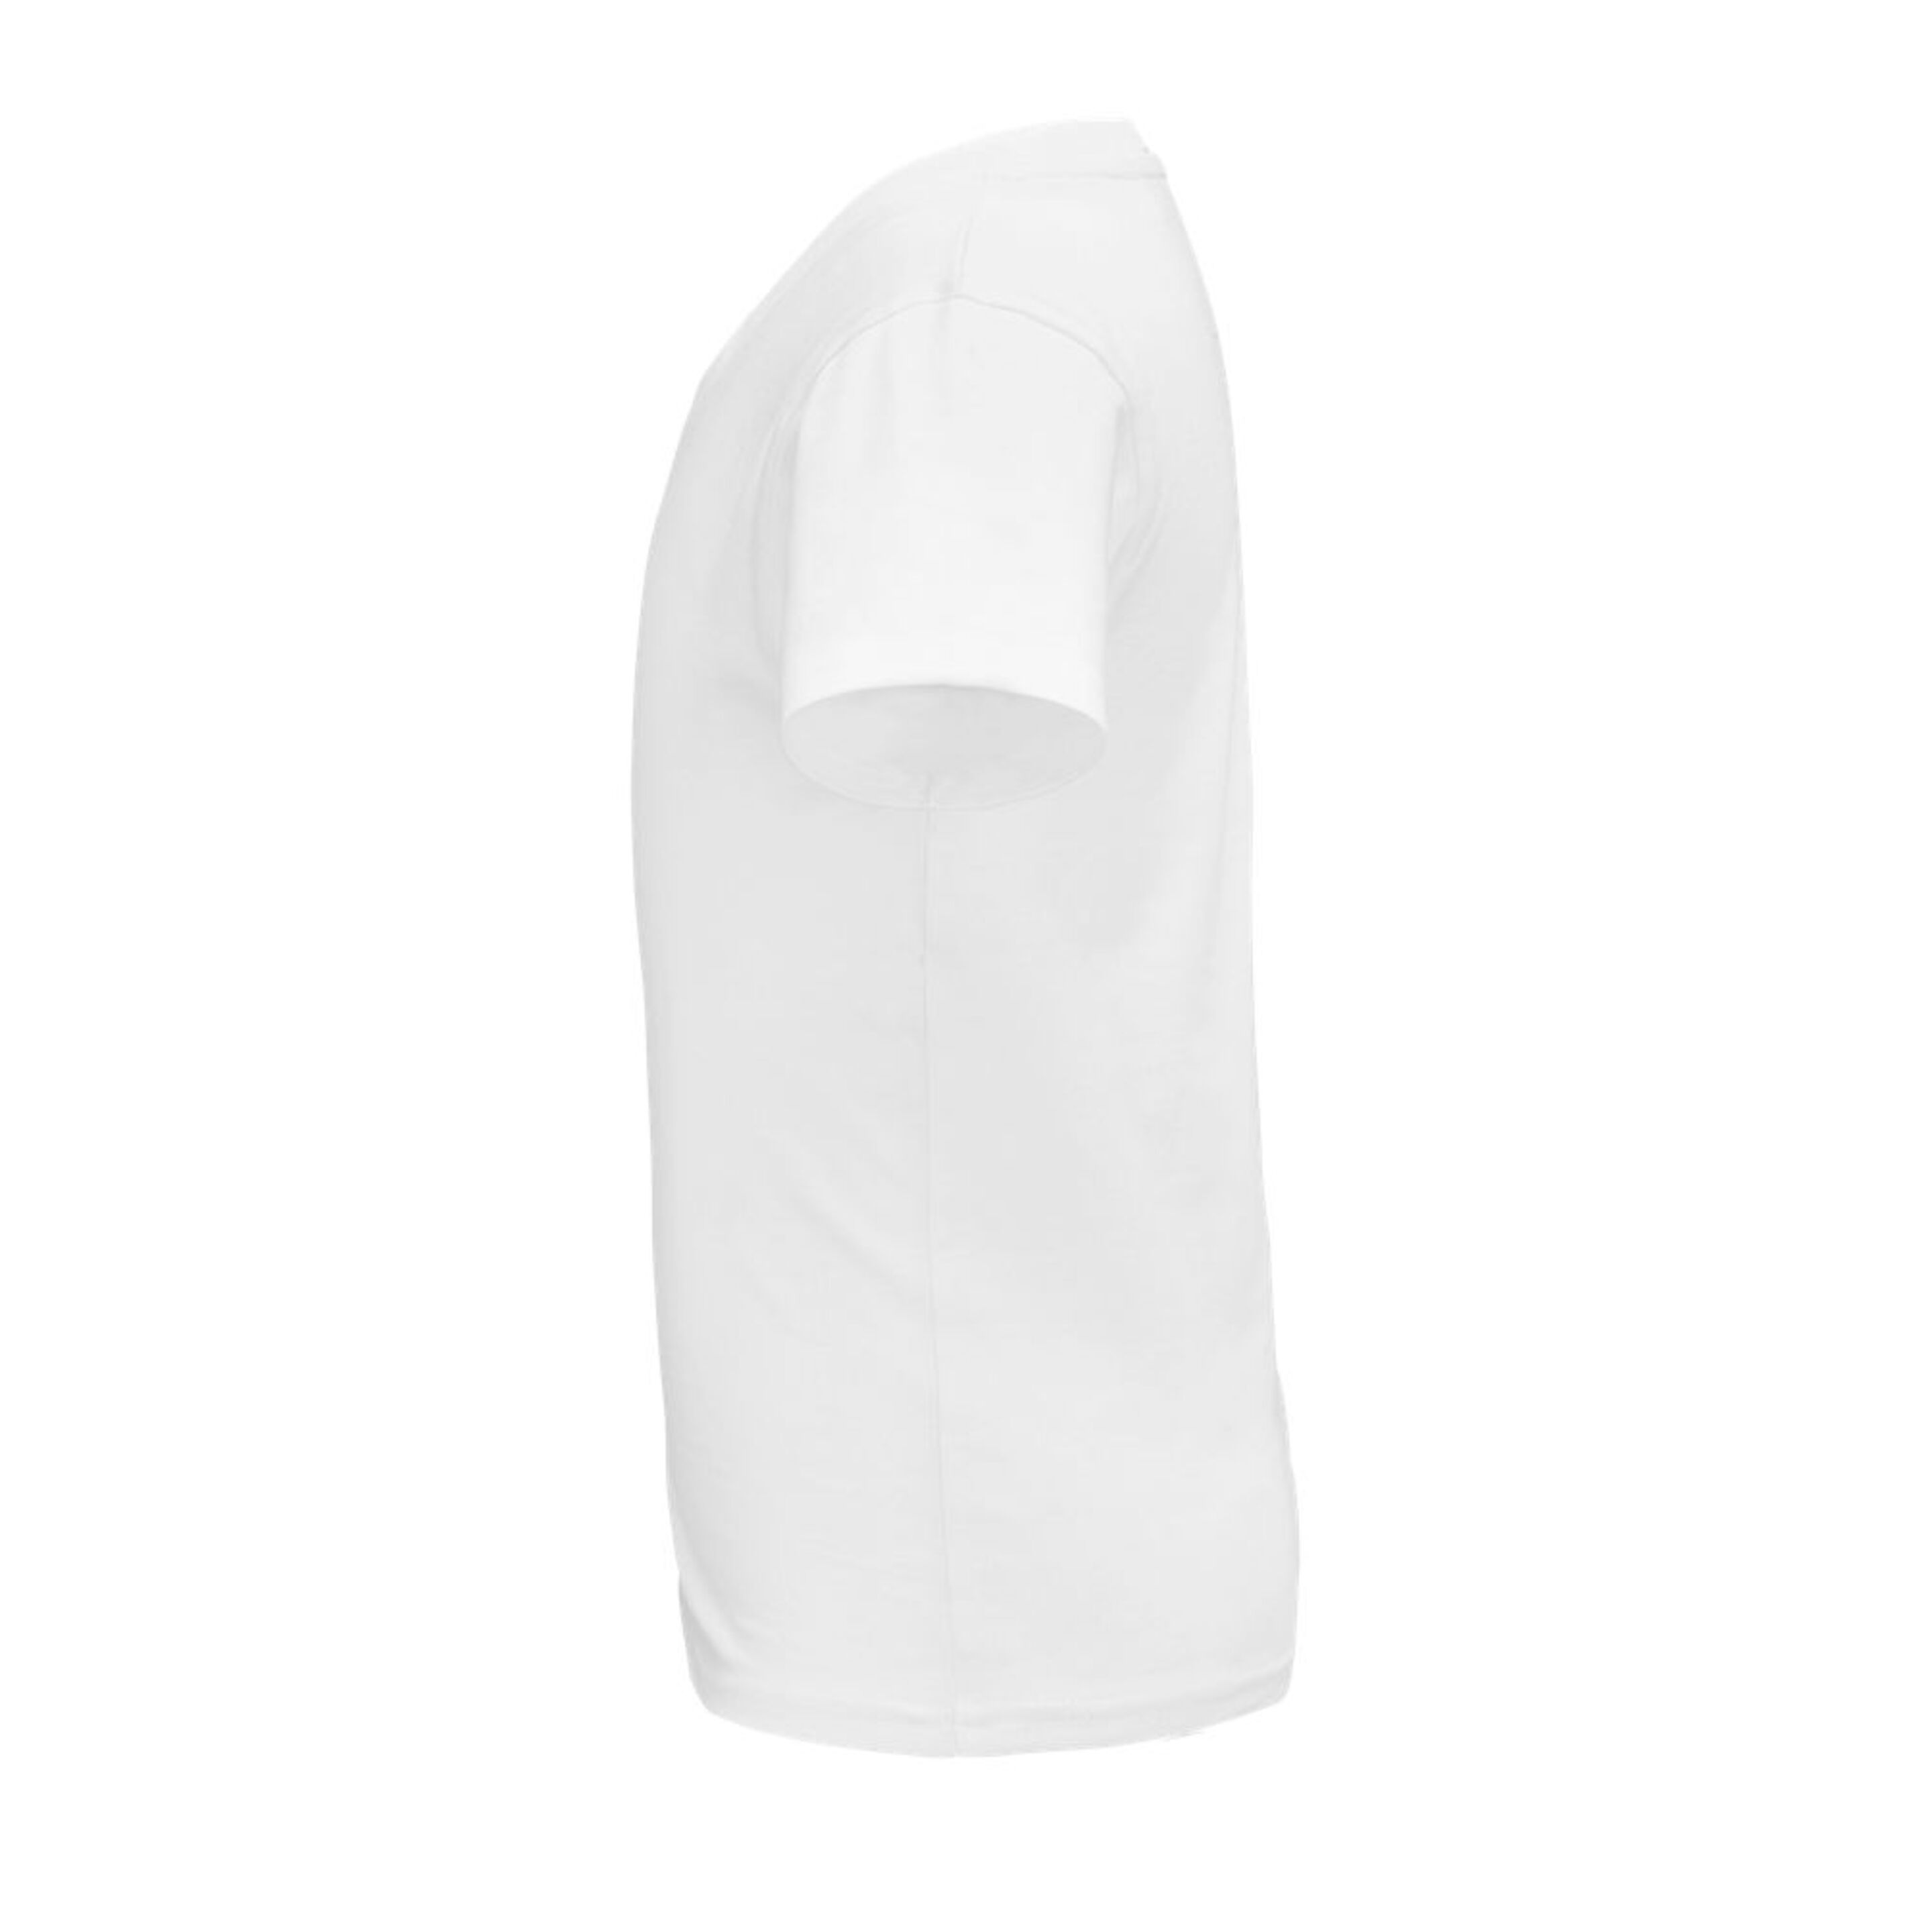 Camiseta Marnaula Pionner - Blanco - Modelo Infantil  MKP